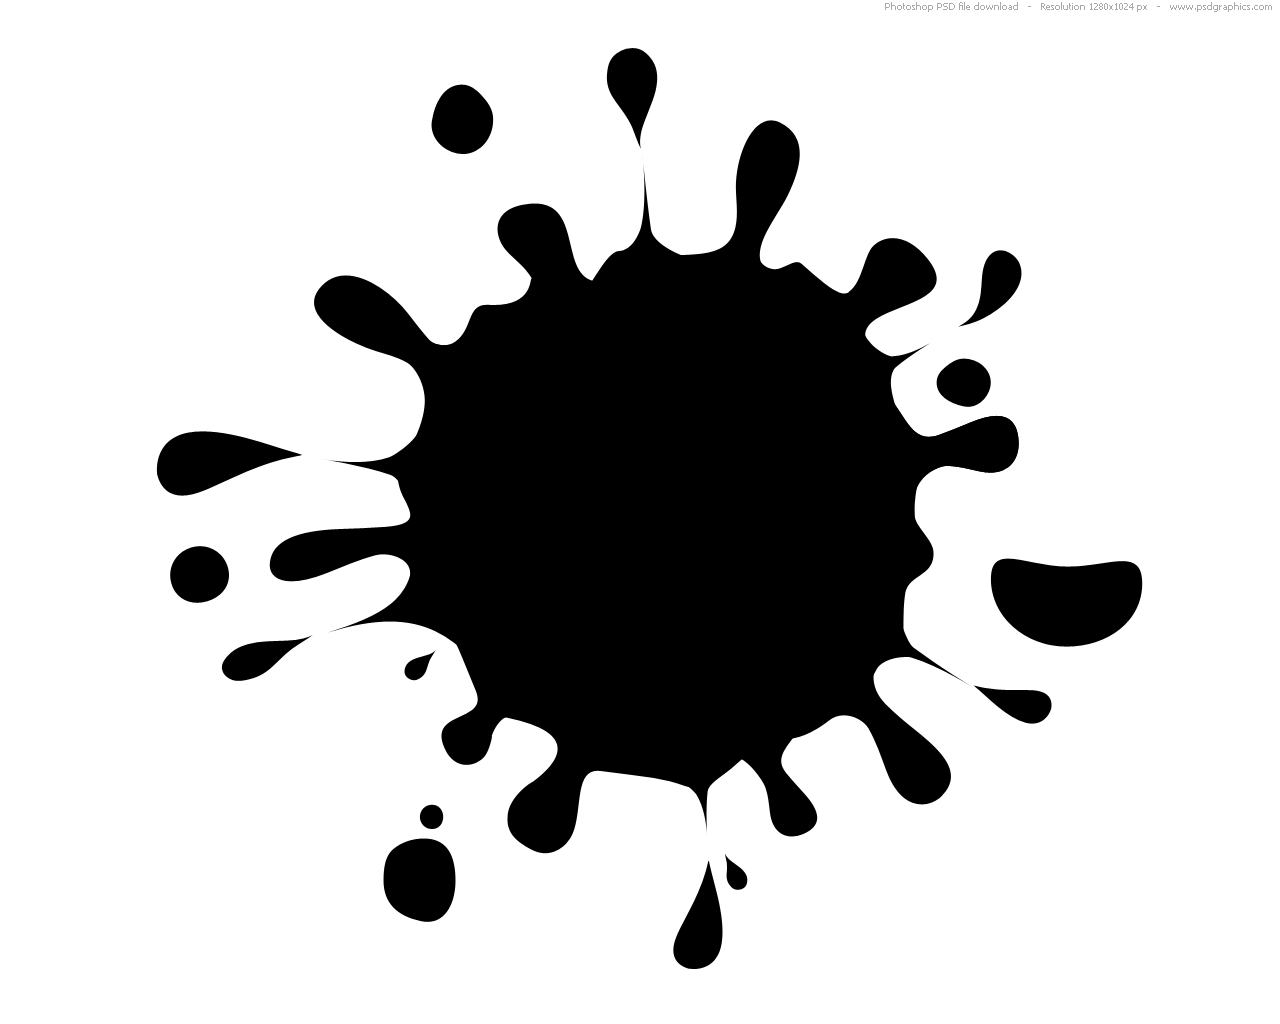 Color Splat Logo - Ink Splat Logo images - Clip Art Library